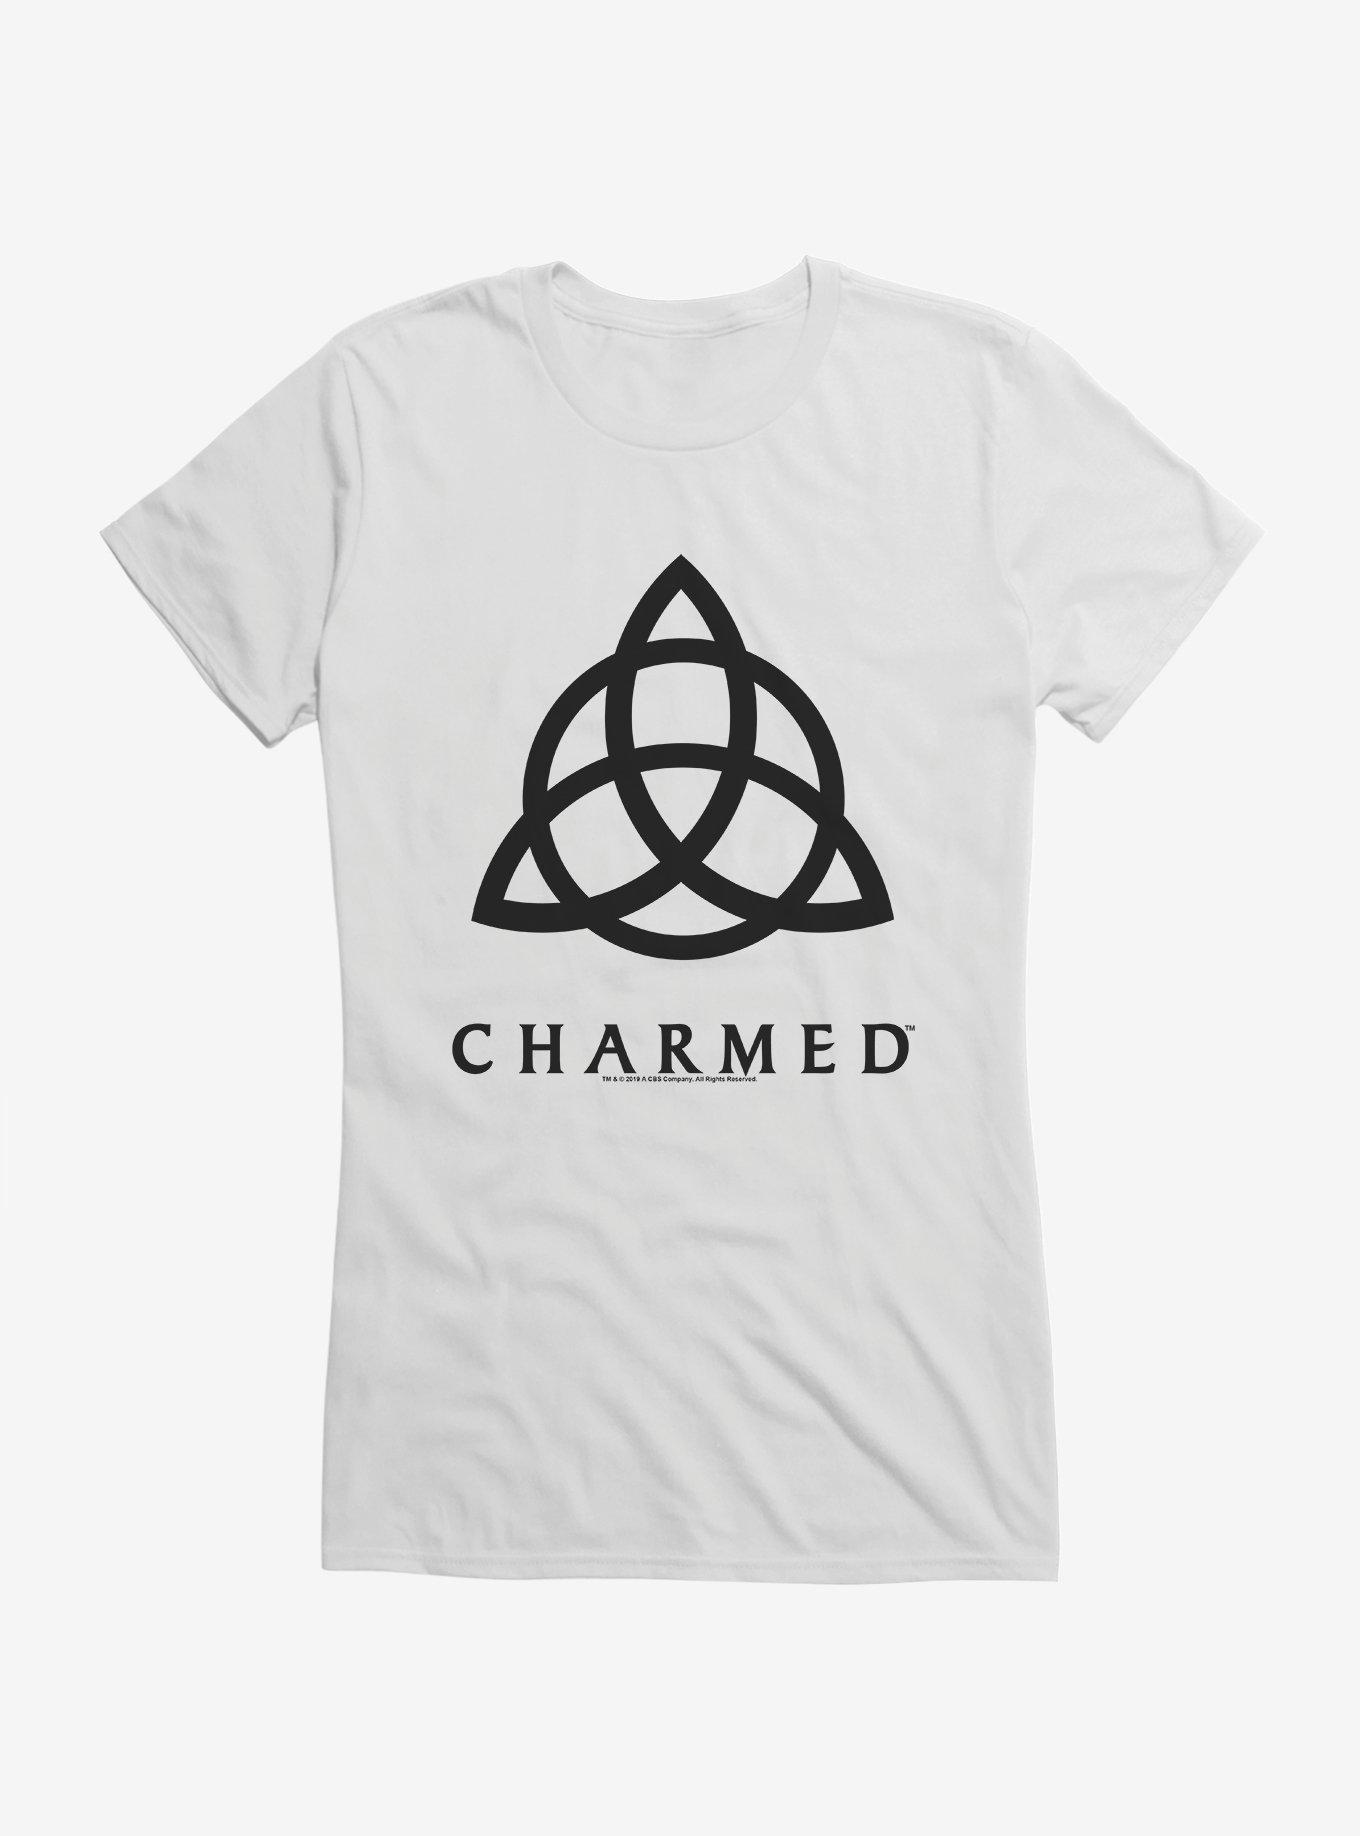 Charmed Triquetra Symbol Girls T-Shirt, , hi-res